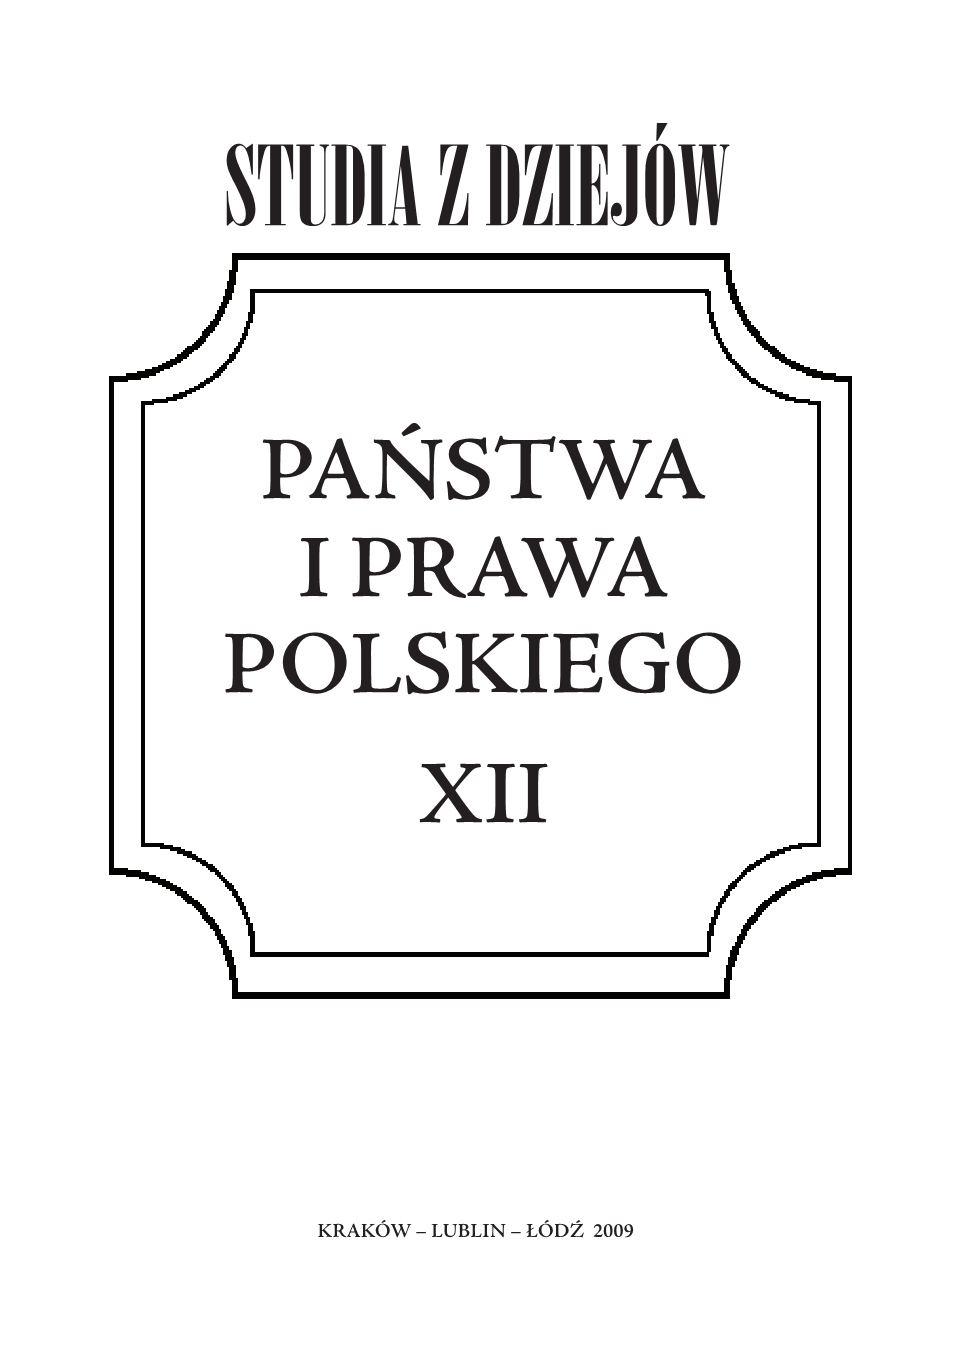 Polska tradycja prawna. Próba rozważań milleniowych